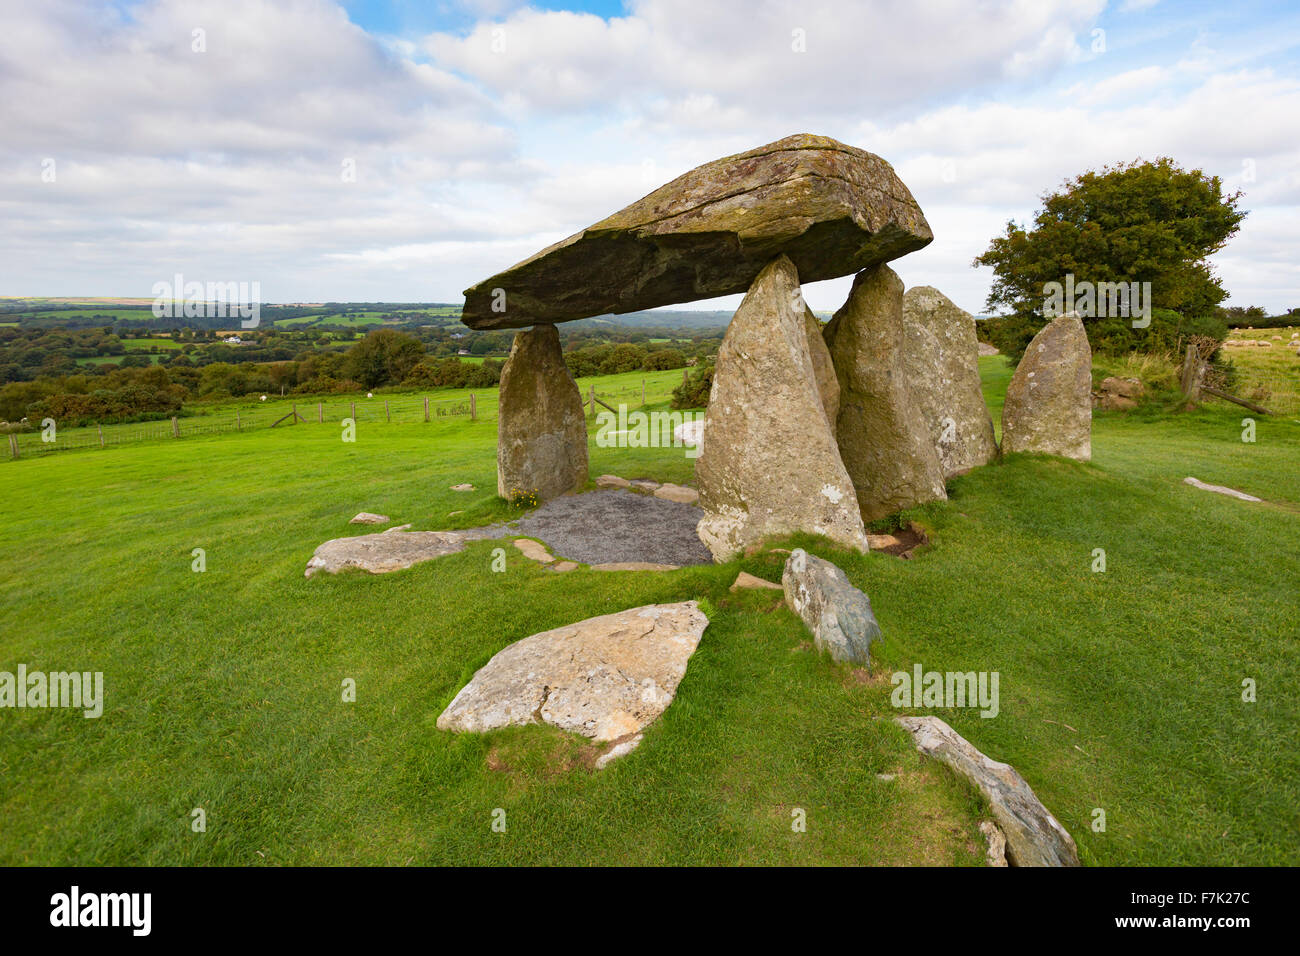 Die Pentre Ifan neolithische Grabkammer, Pembrokeshire, Wales, Vereinigtes Königreich. Beschrieben als "Portal Dolmen" Art. Stockfoto